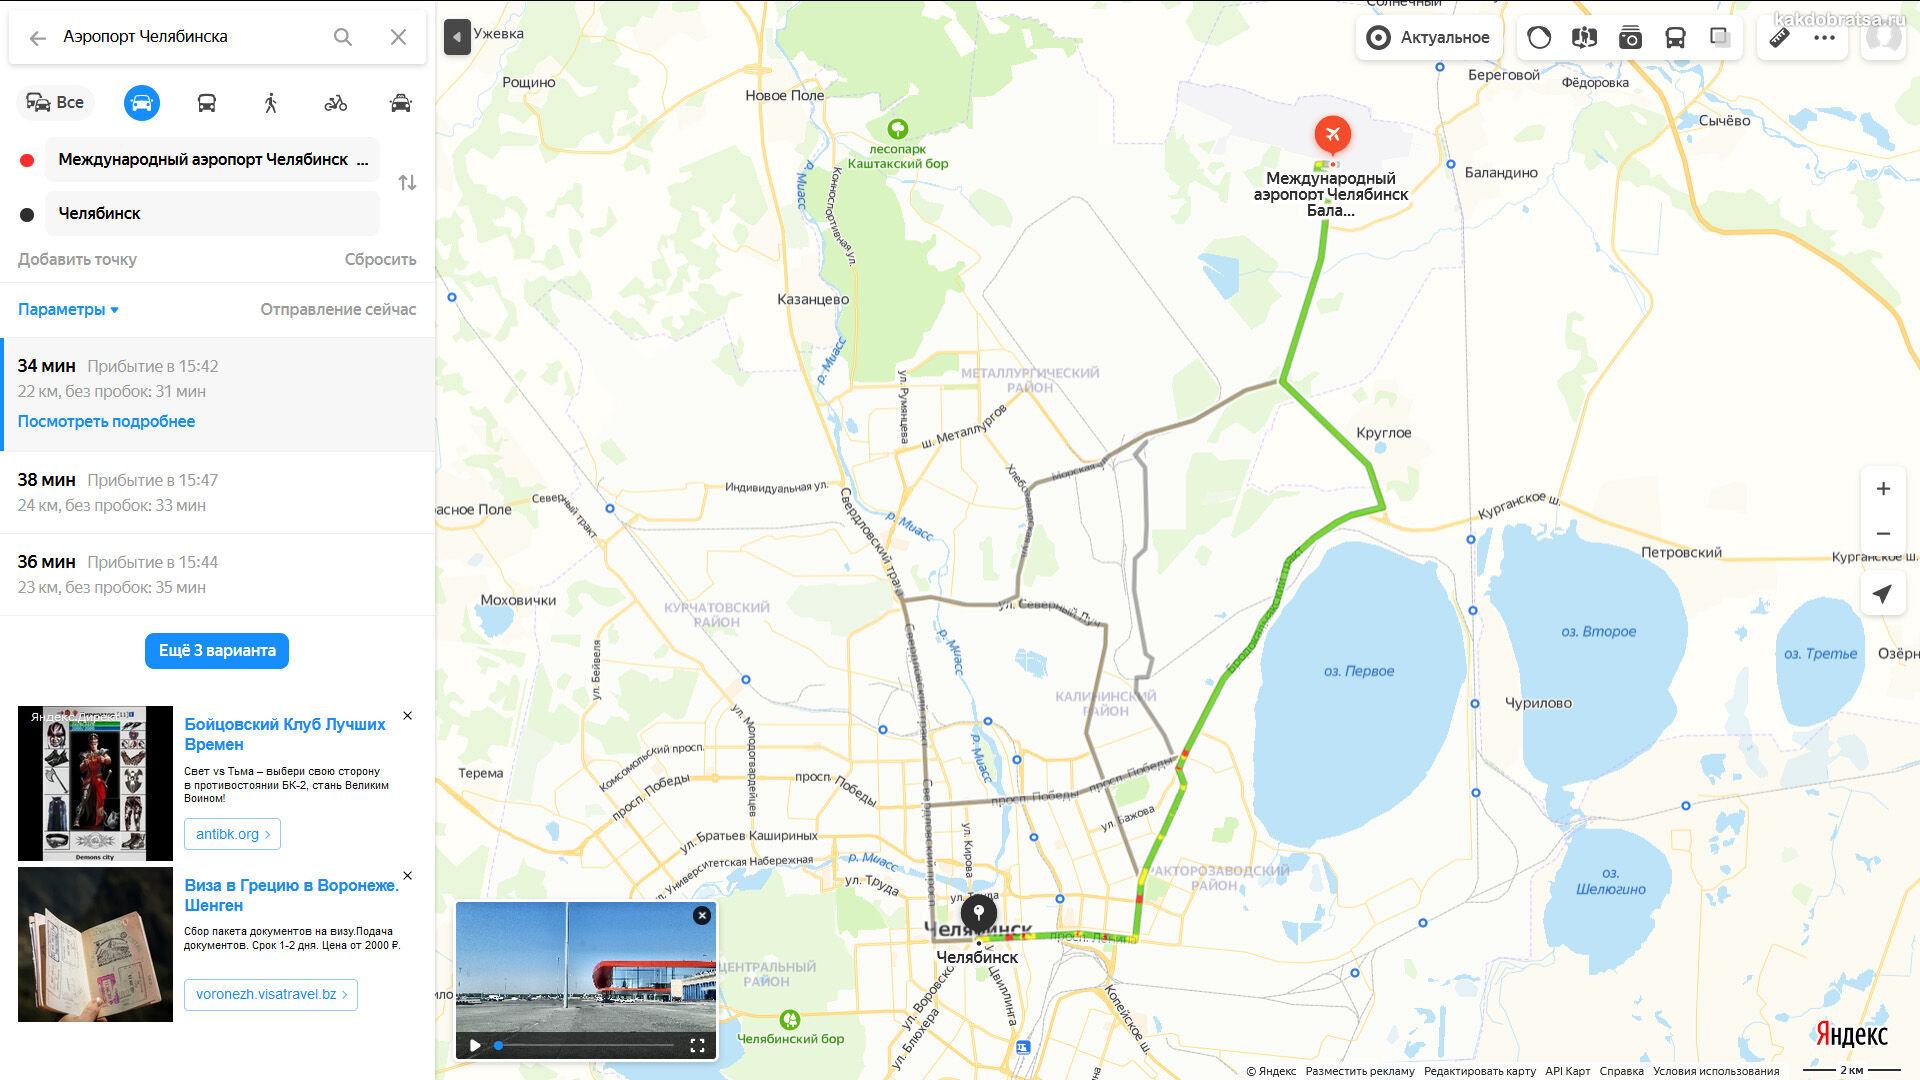 Аэропорт Челябинска на карте и маршрут до центра